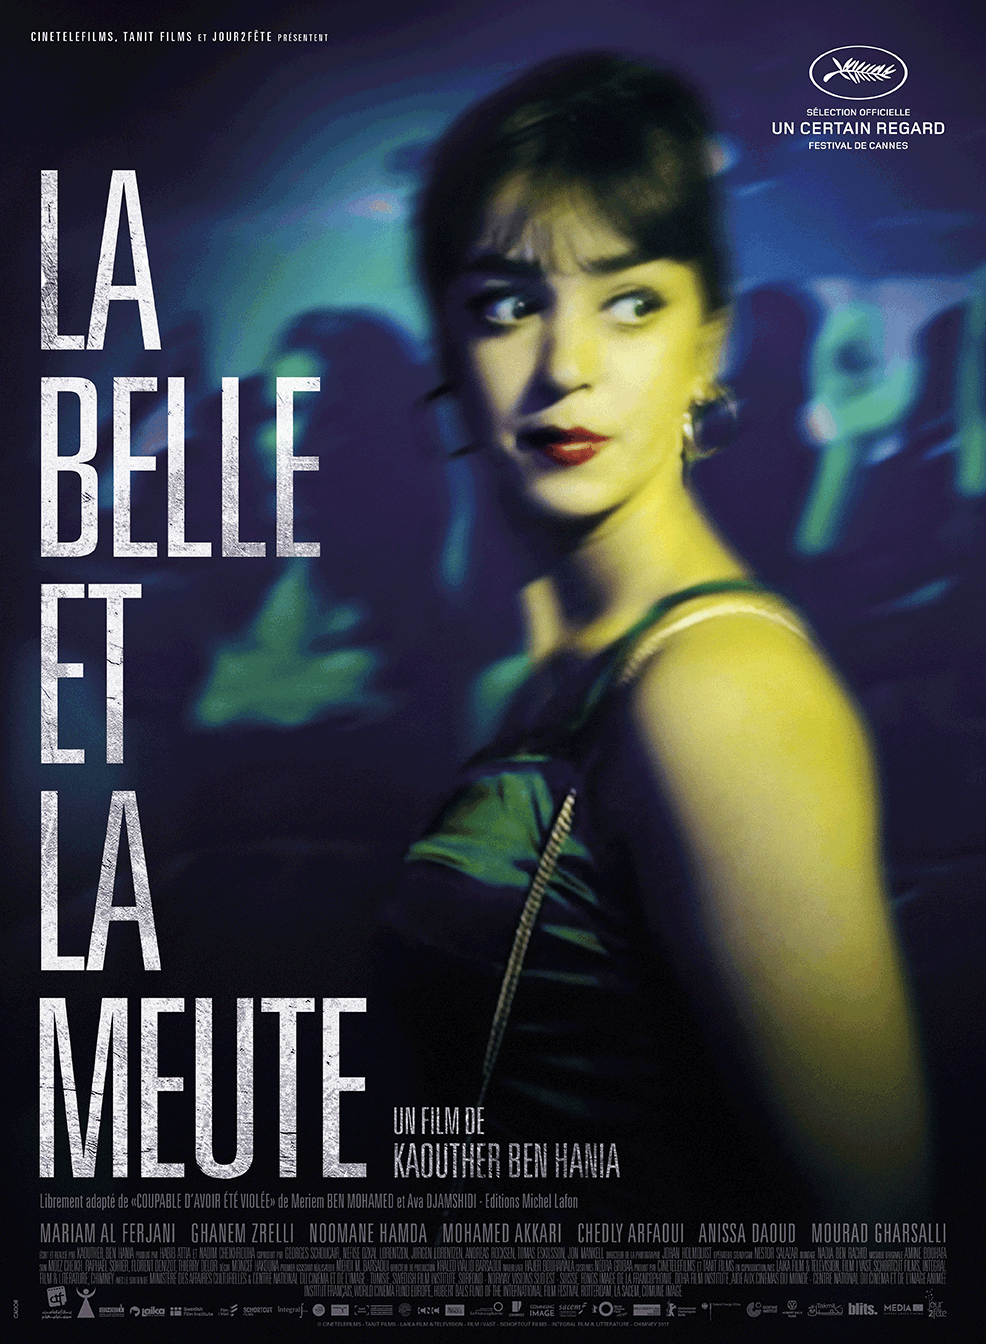 La Belle et la meute - Film (2017) streaming VF gratuit complet